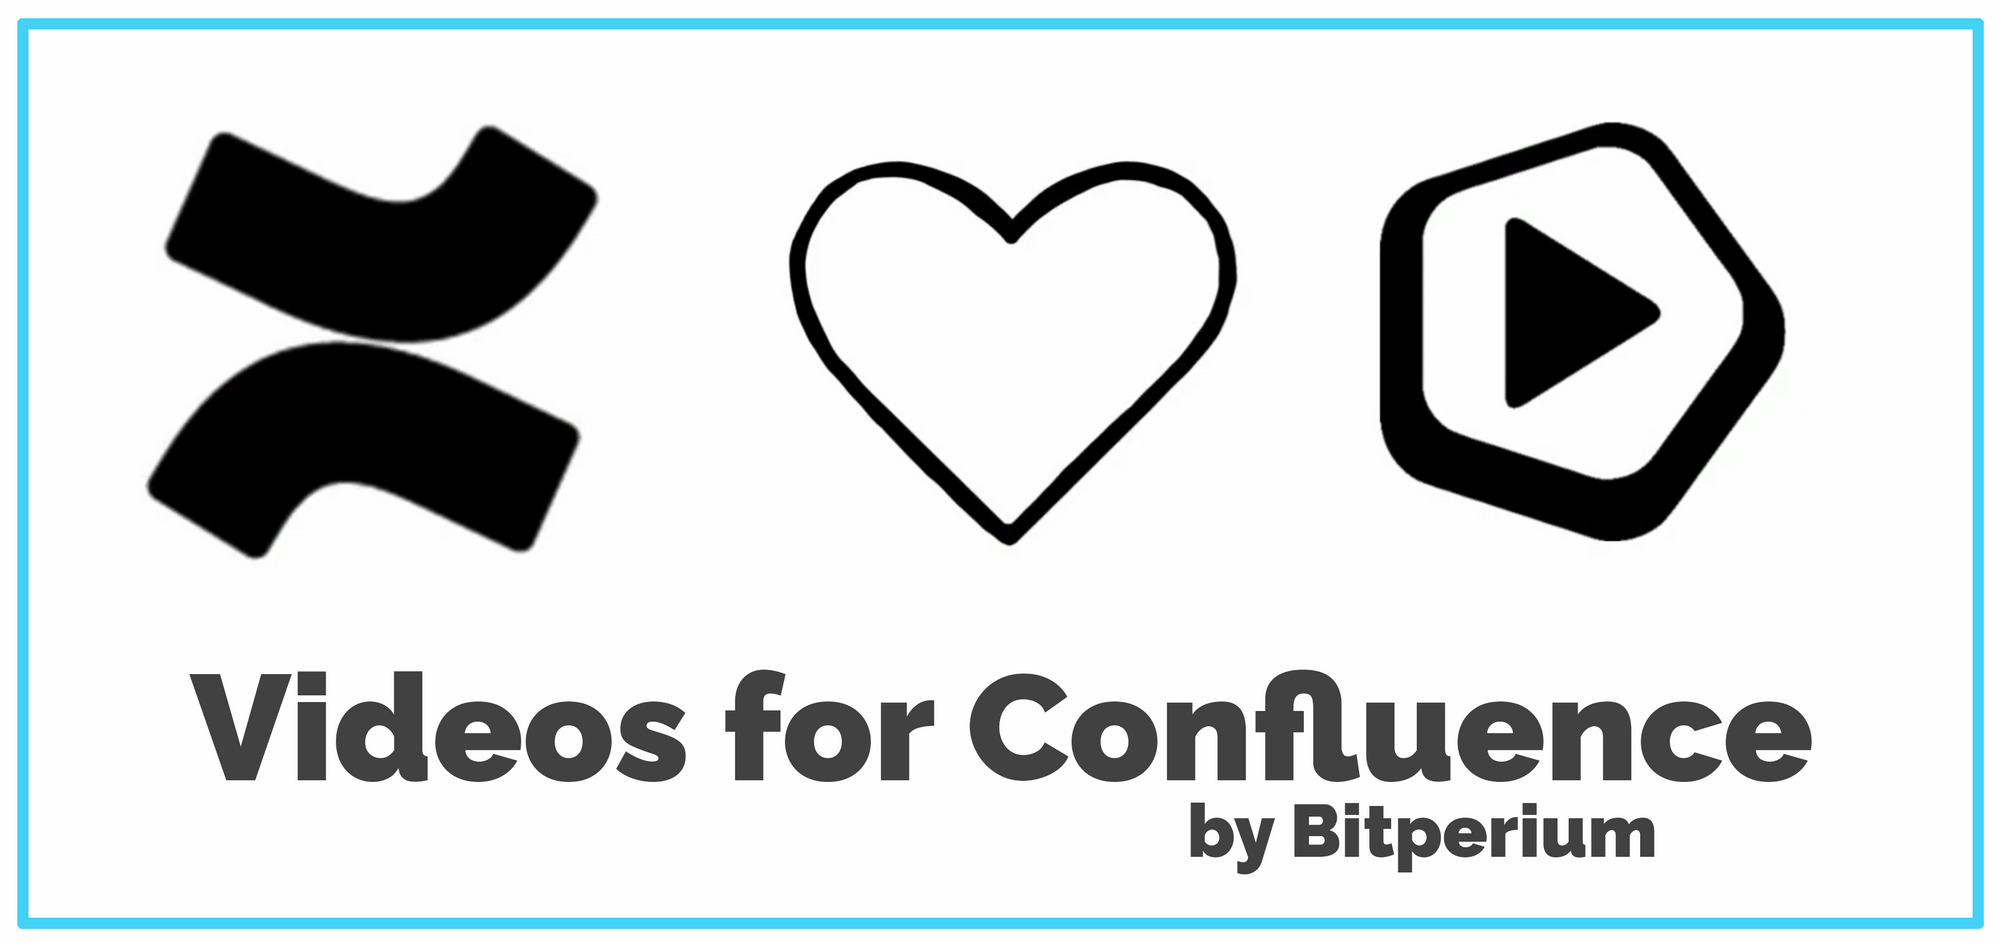 Videos for Confluence by Bitperium - Verwandeln Sie Confluence in eine Medienplattform